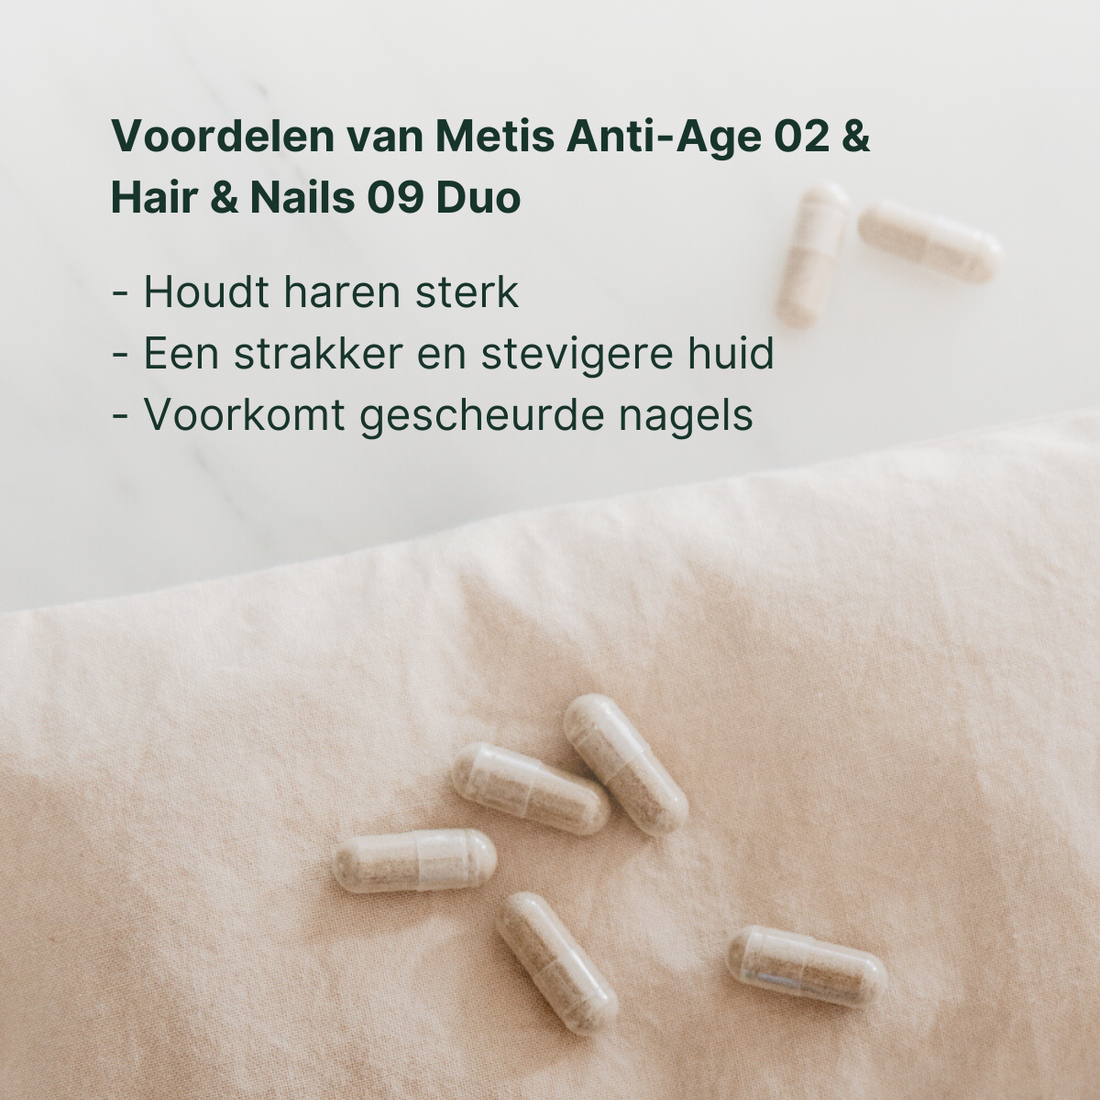 Haare & Nägel + Anti-Age Deal